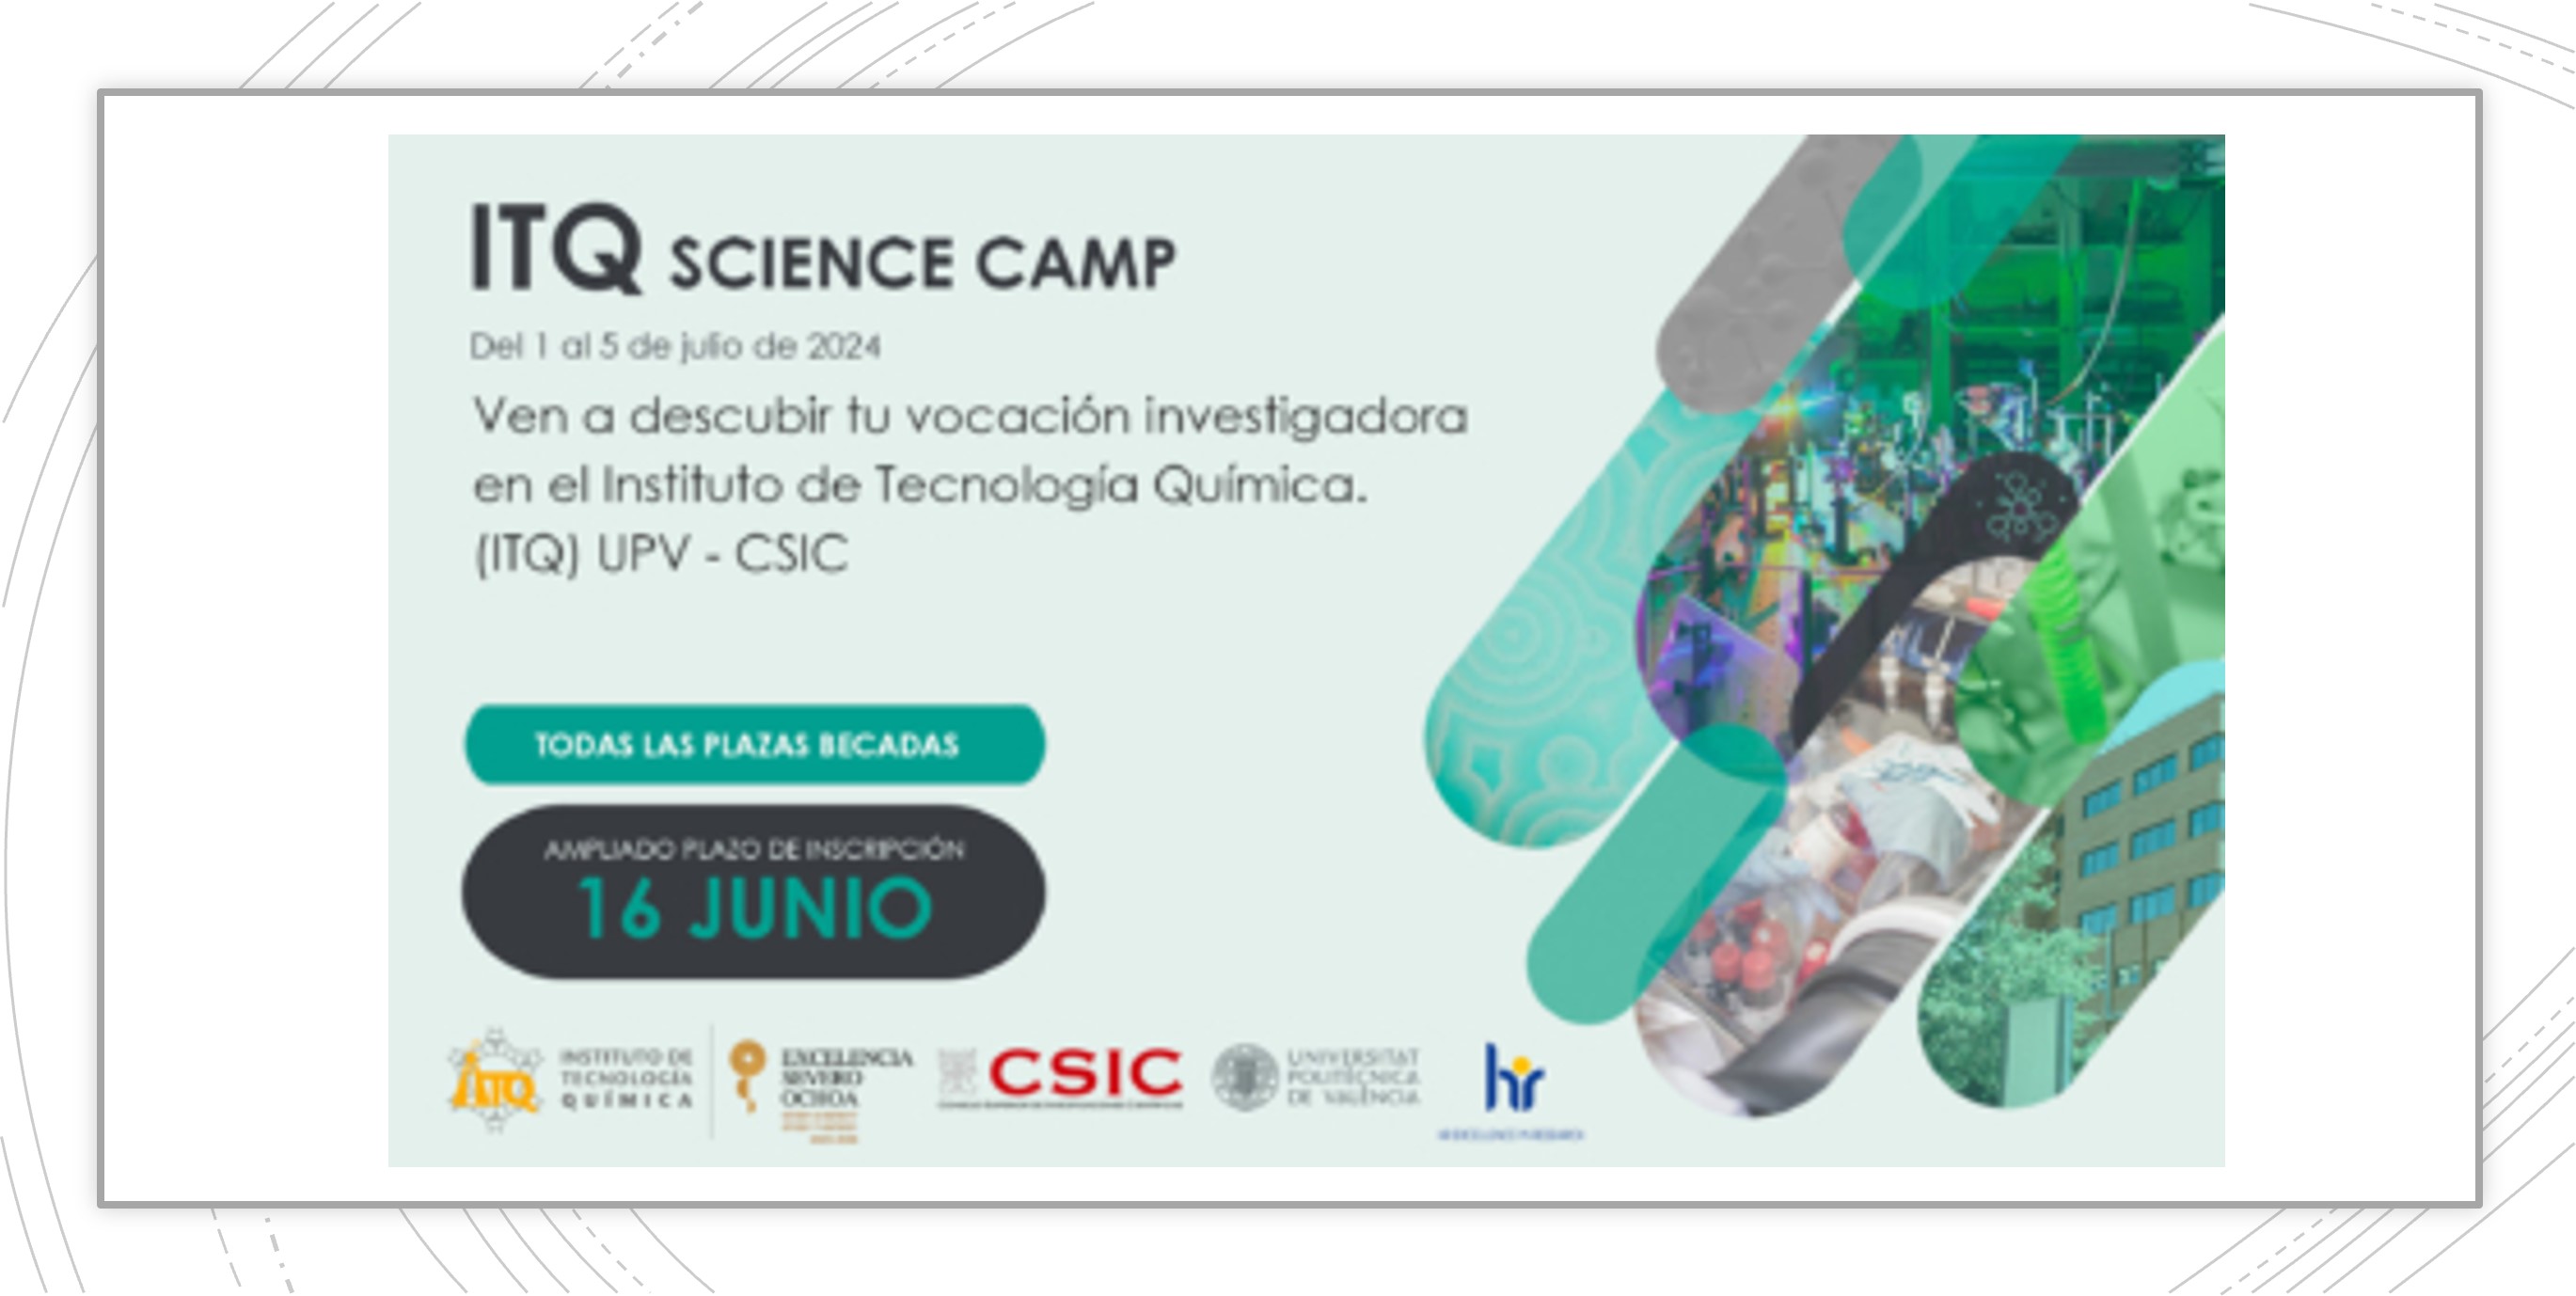  1ª edición del ITQ Science Camp